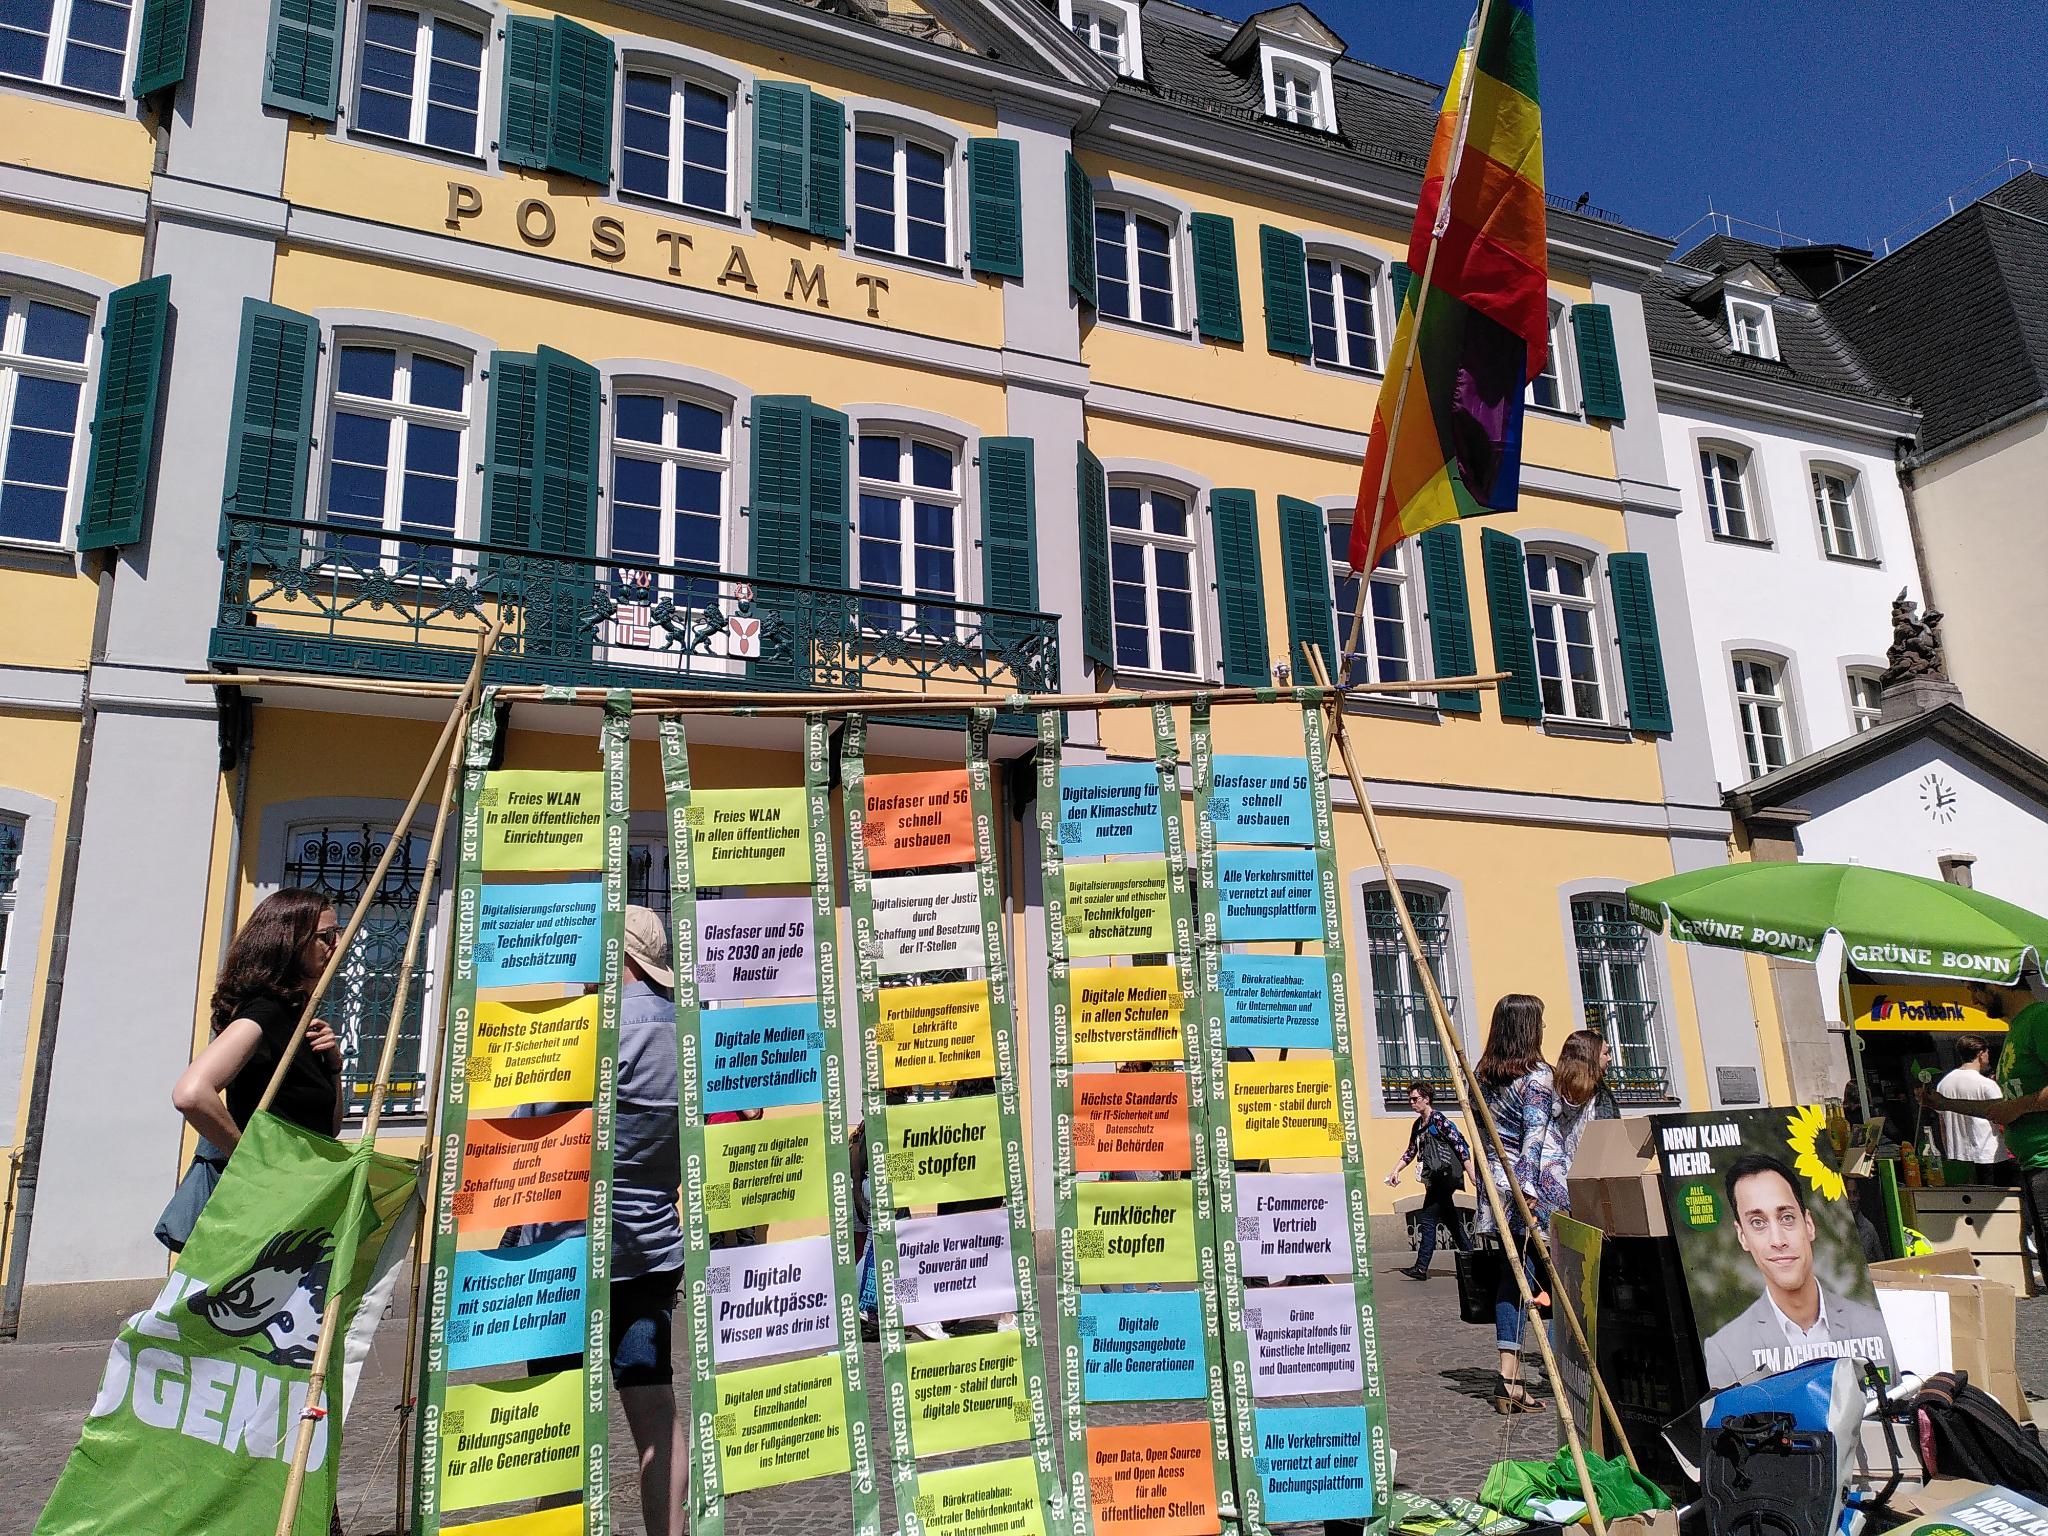 Digitalforderungen aus dem Landtagswahlprogramm - auf Papier gedruckt, mit QR-Codes versehen, und auf einem Wahlkampf-Stand präsentiert.